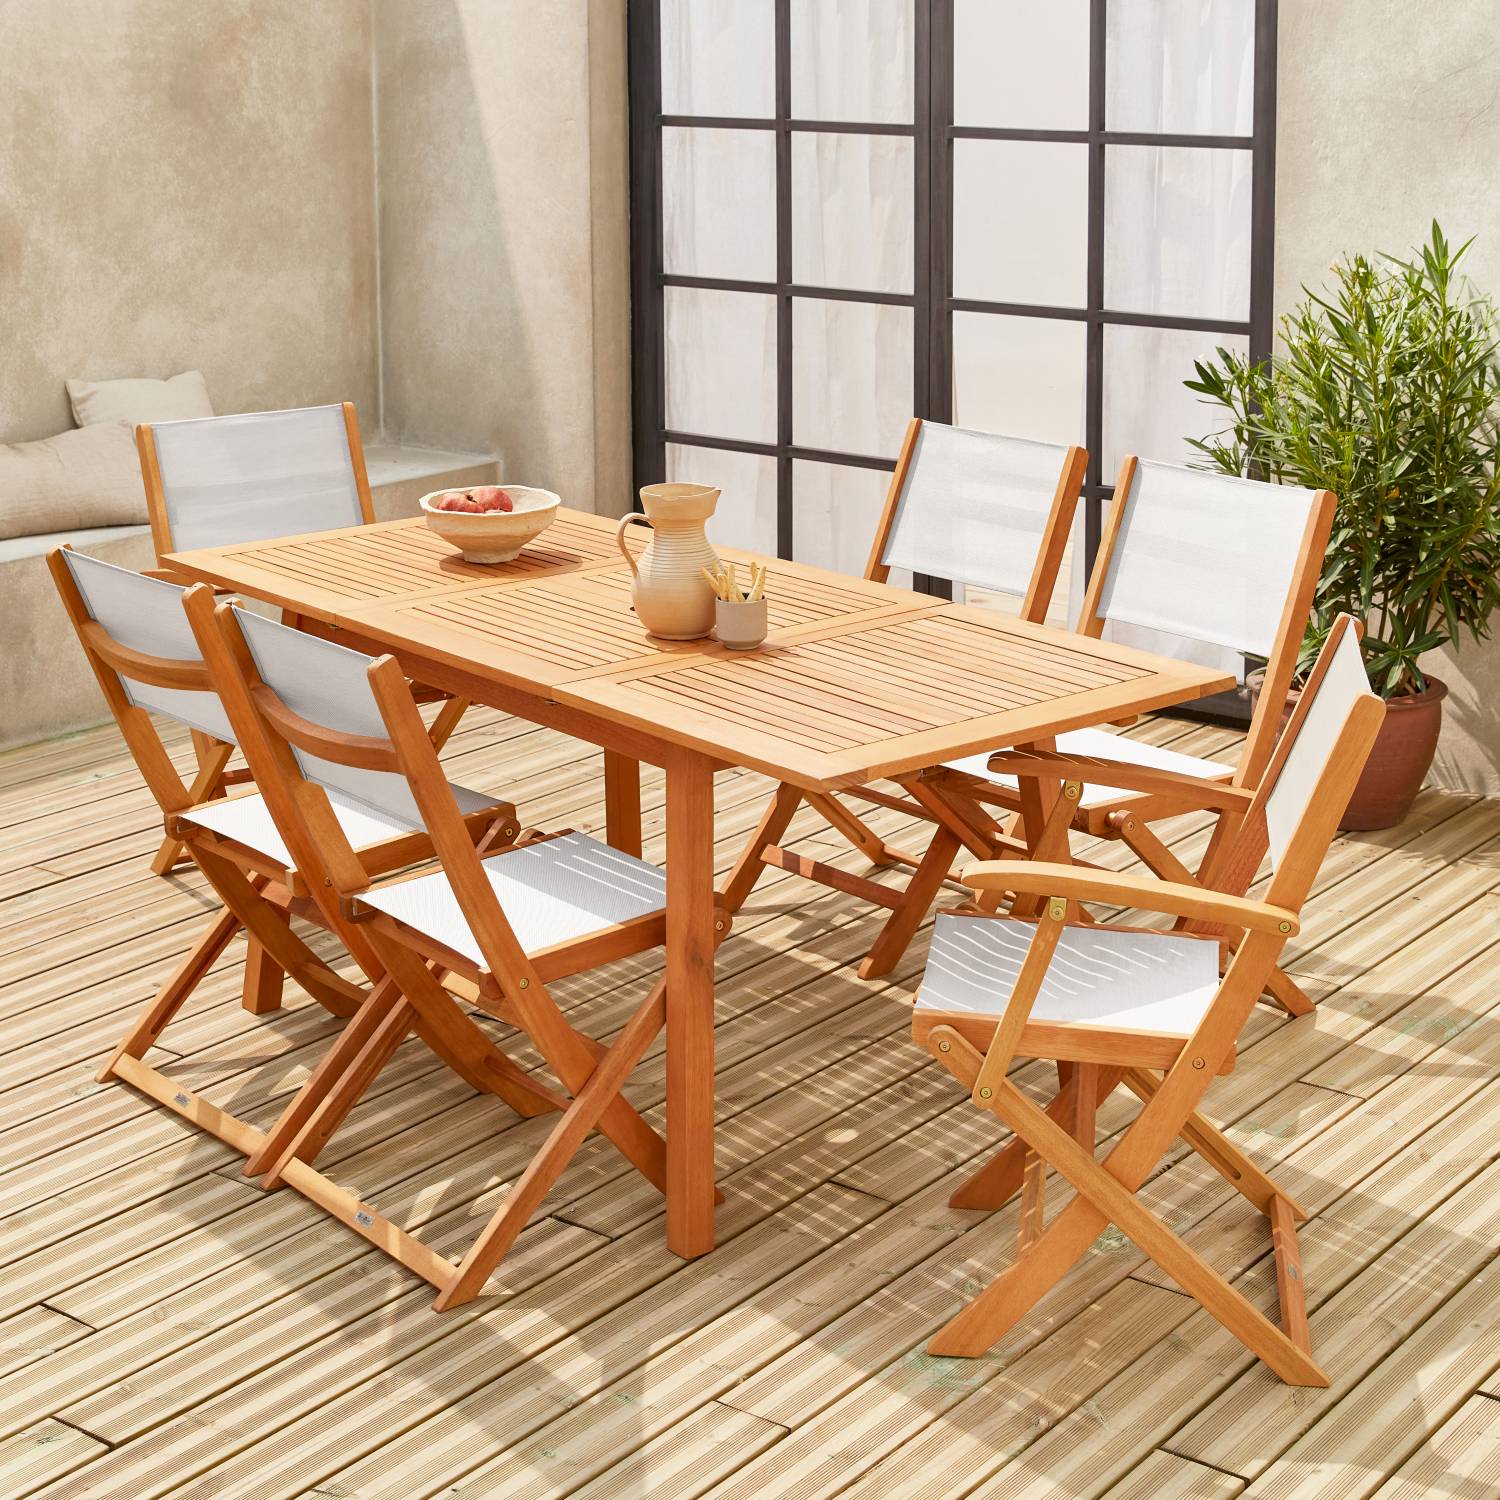 Almeria móveis de jardim em madeira, mesa retangular de 120-180 cm, 2 poltronas e 4 cadeiras de eucalipto FSC e textilene branco | sweeek